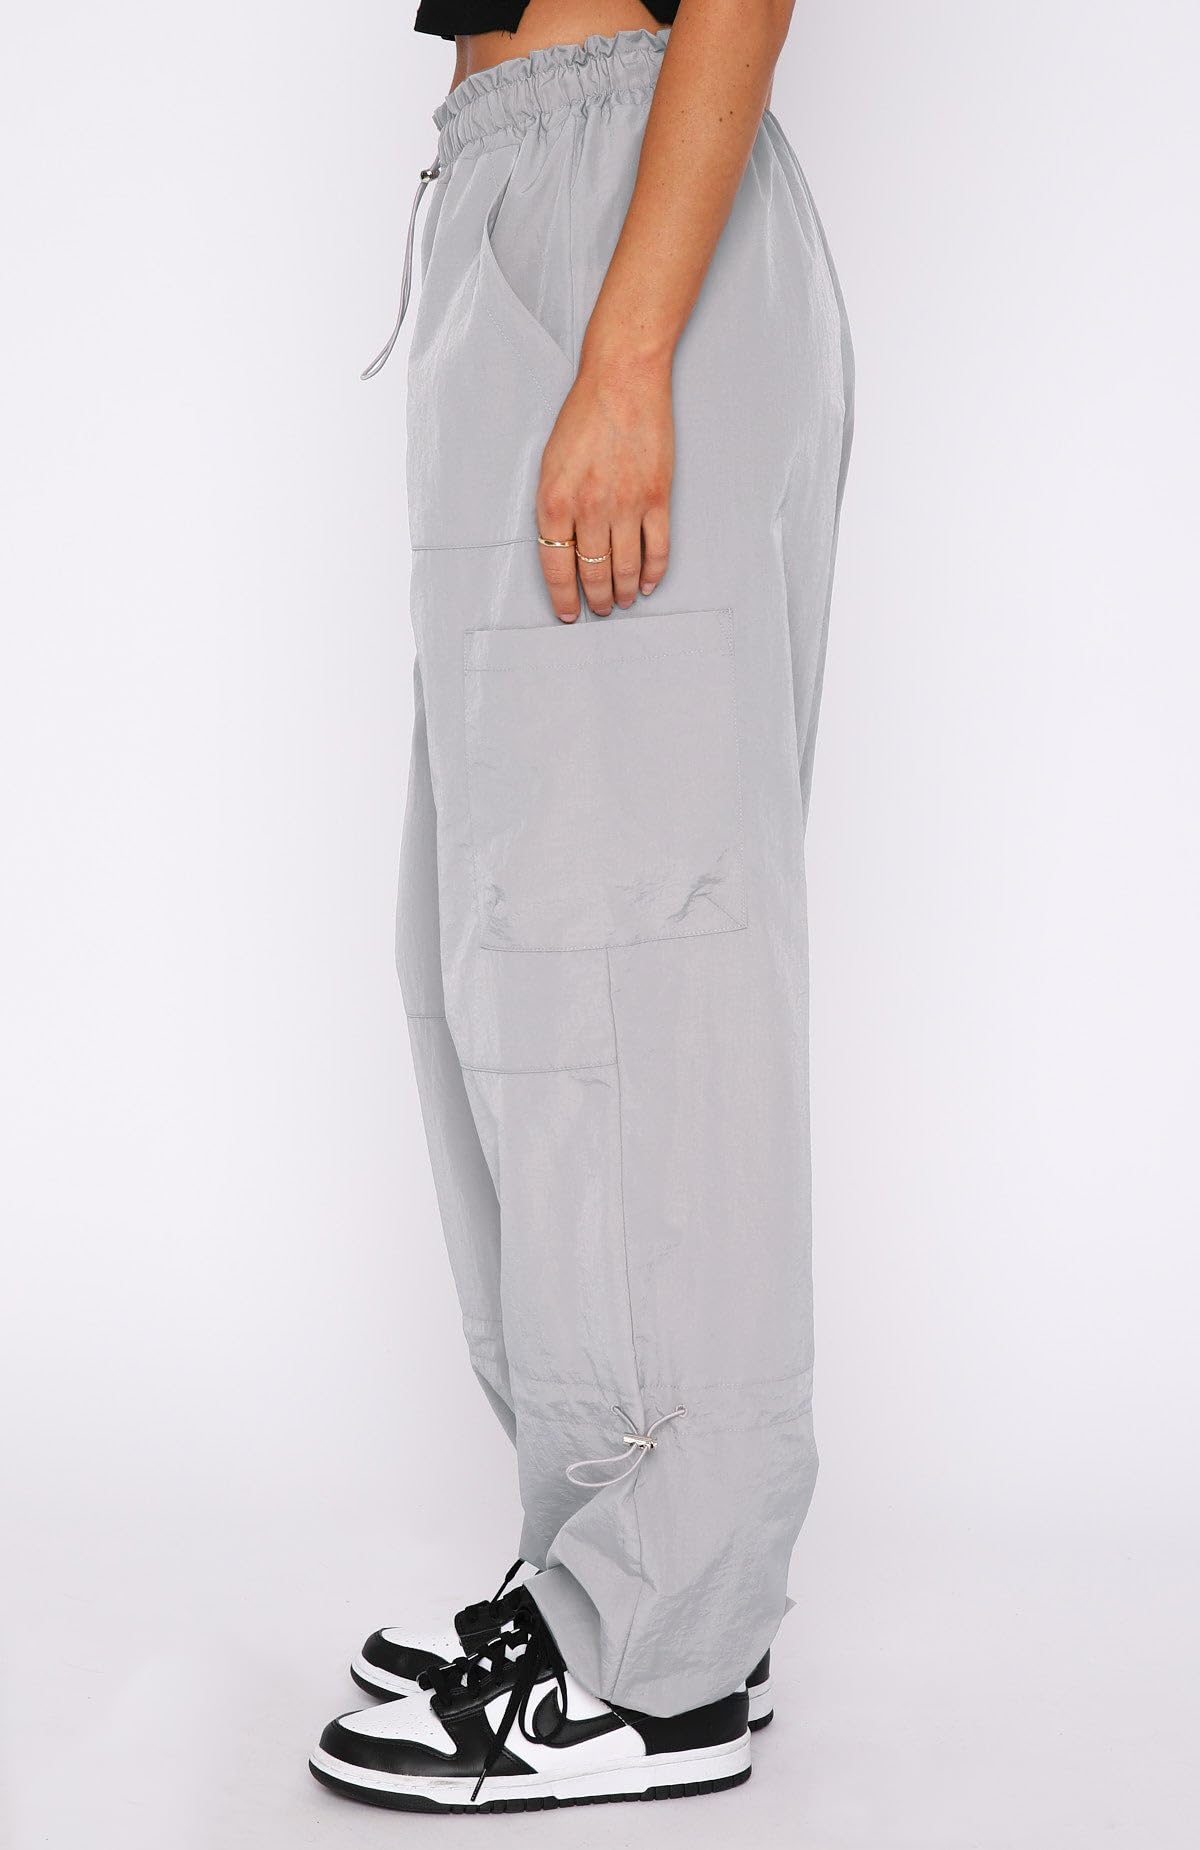 DISCIPBUSH Cargo Pants Women Baggy - Parachute Pants for Women / Navy Blue  Large